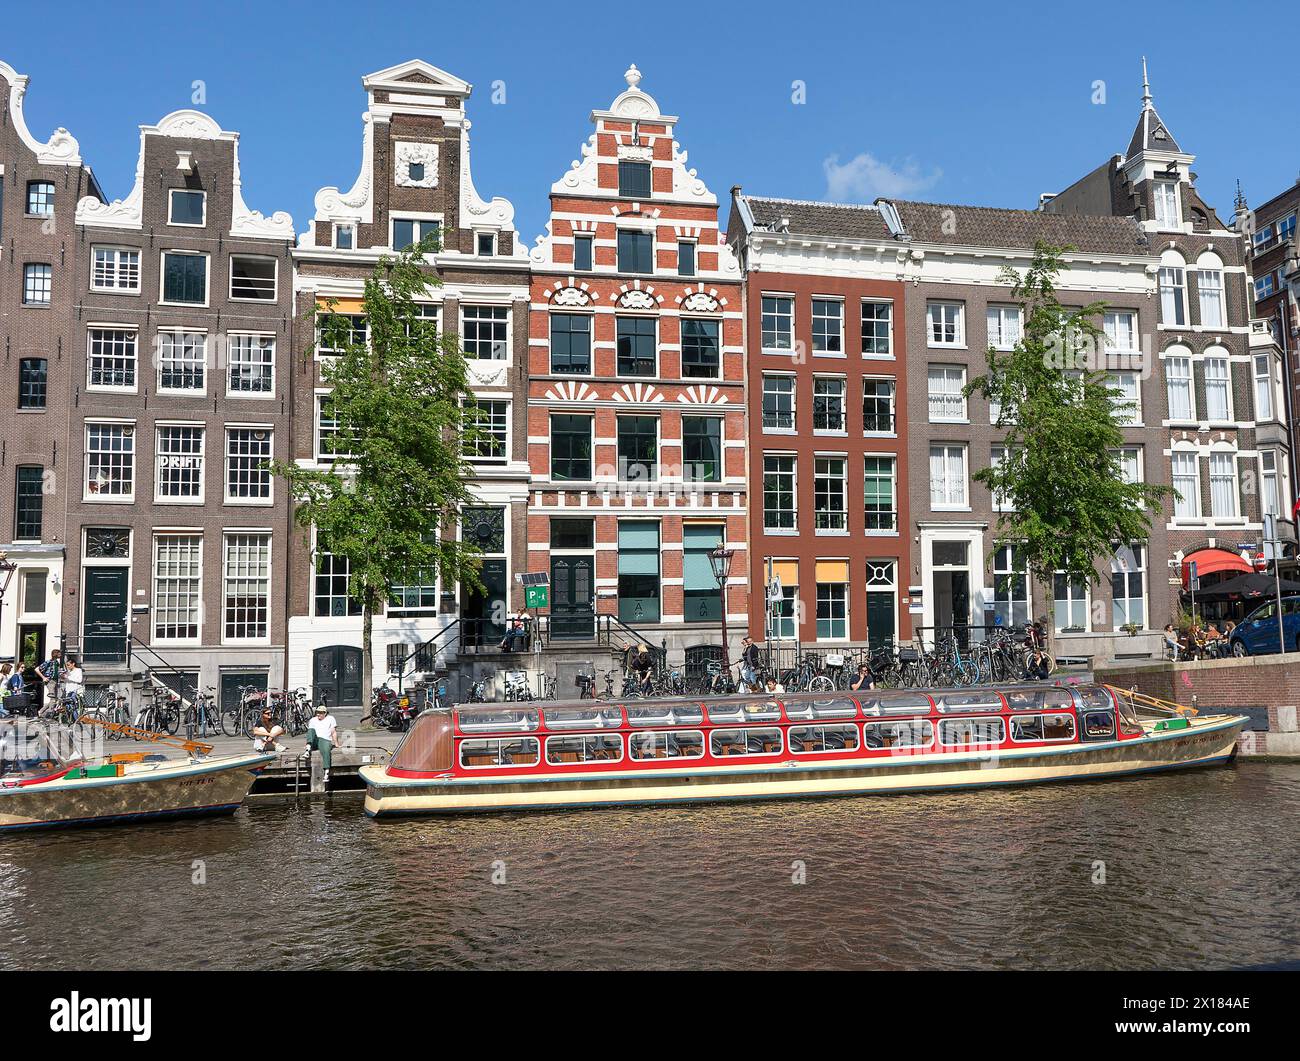 Una crociera turistica in barca a Rokin, Amsterdam, Paesi Bassi Foto Stock